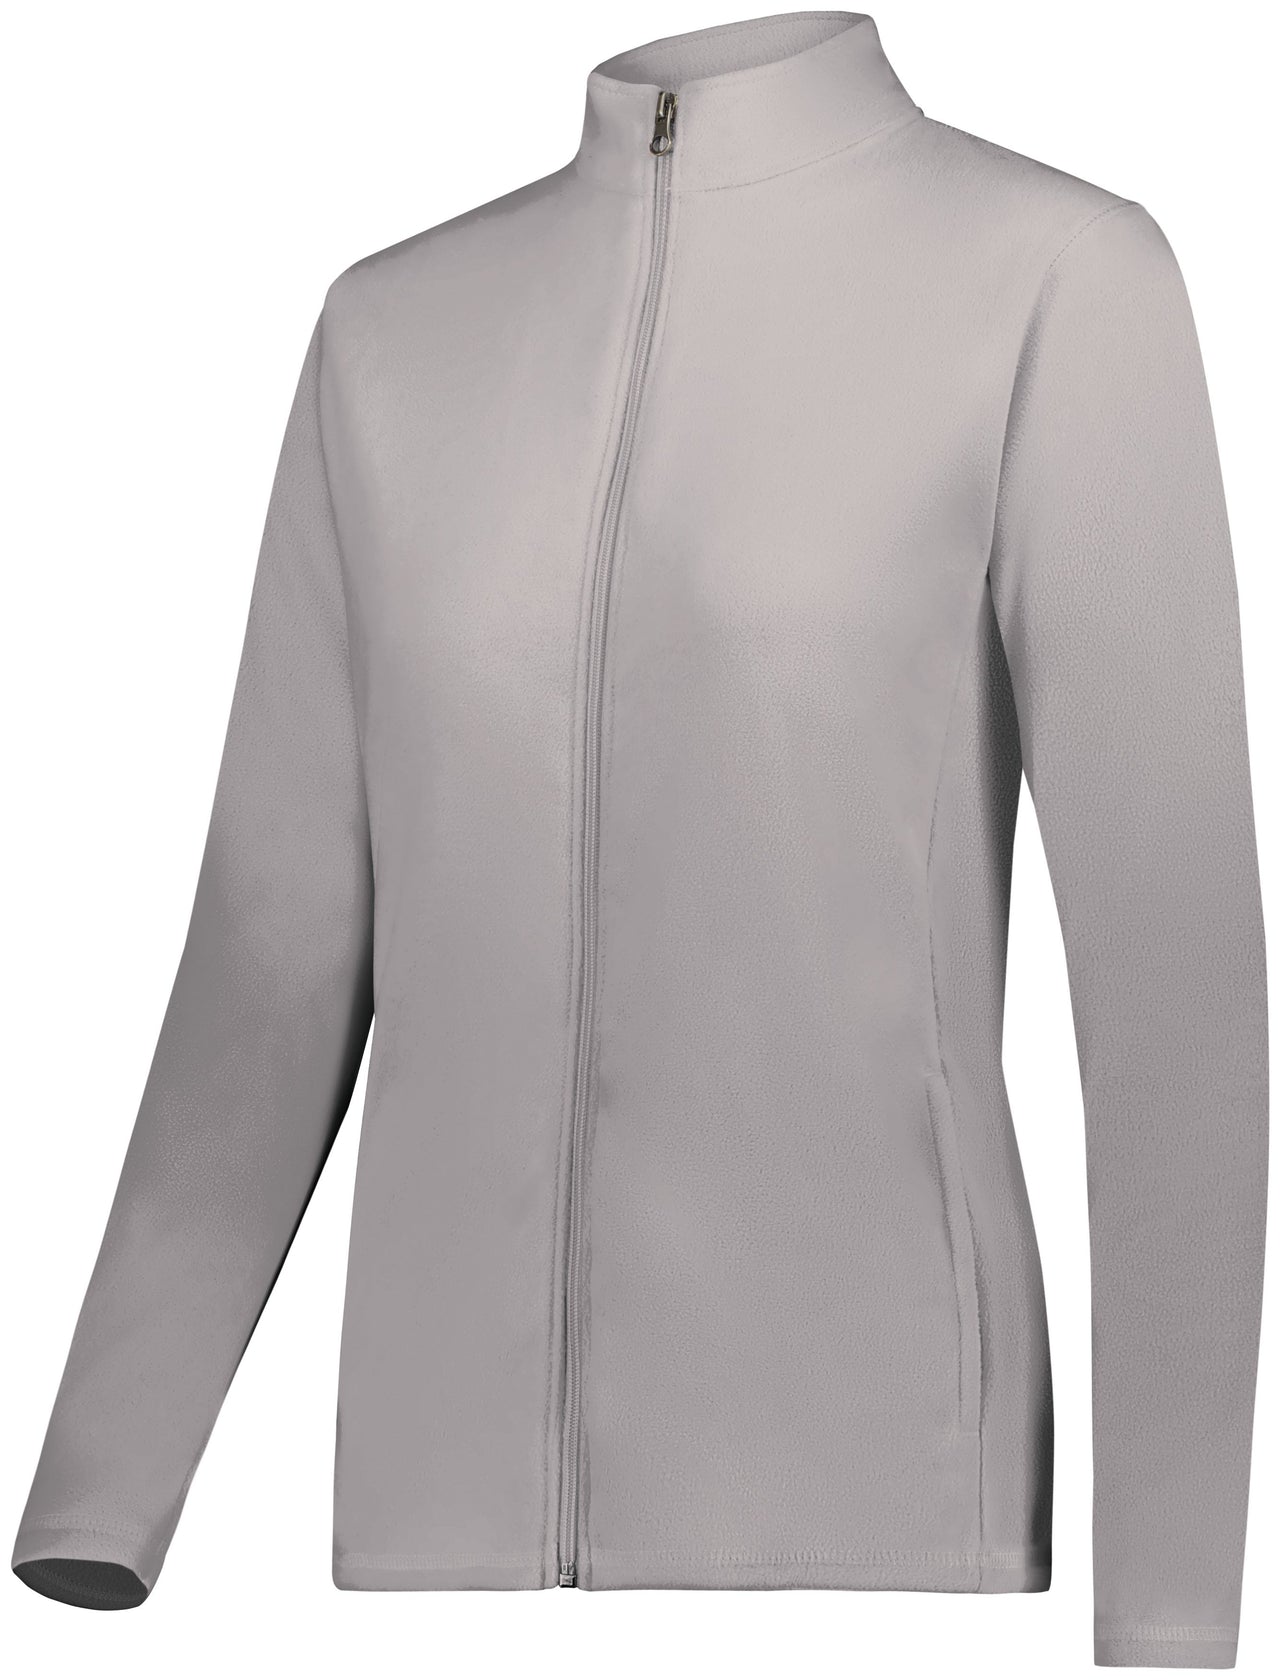 Veste polaire Micro-Lite entièrement zippée pour femme - 6862